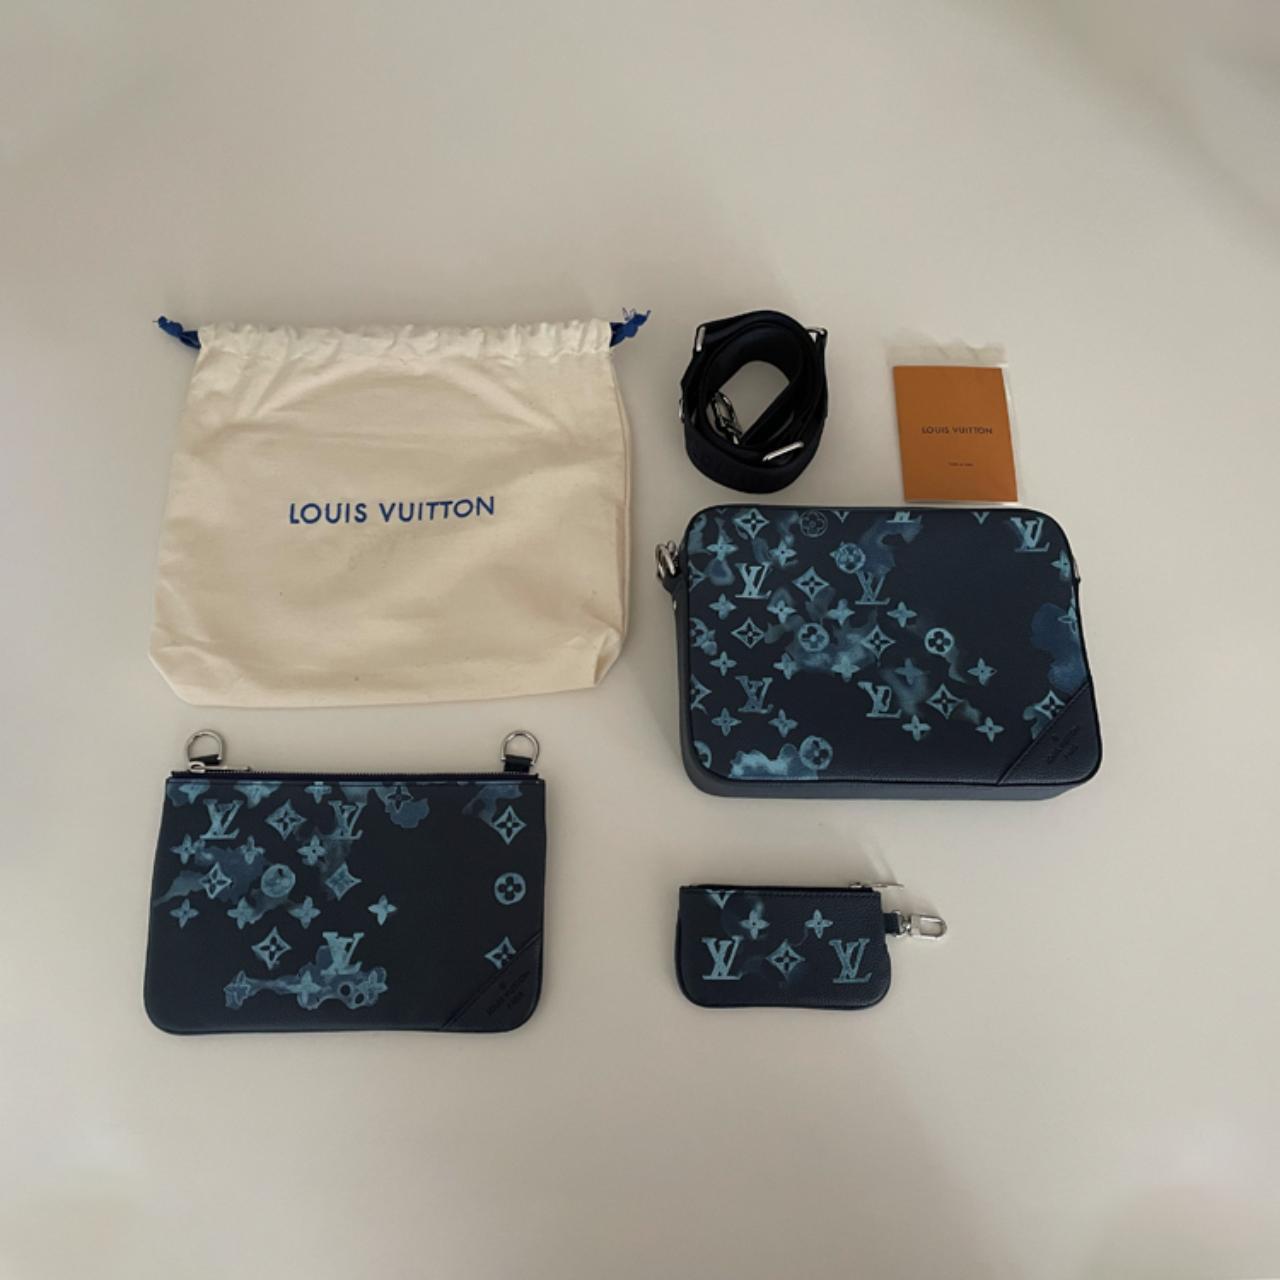 Lous Vuitton trio messenger men bag available 🤙/app +254701012070  #thedresserry #lv